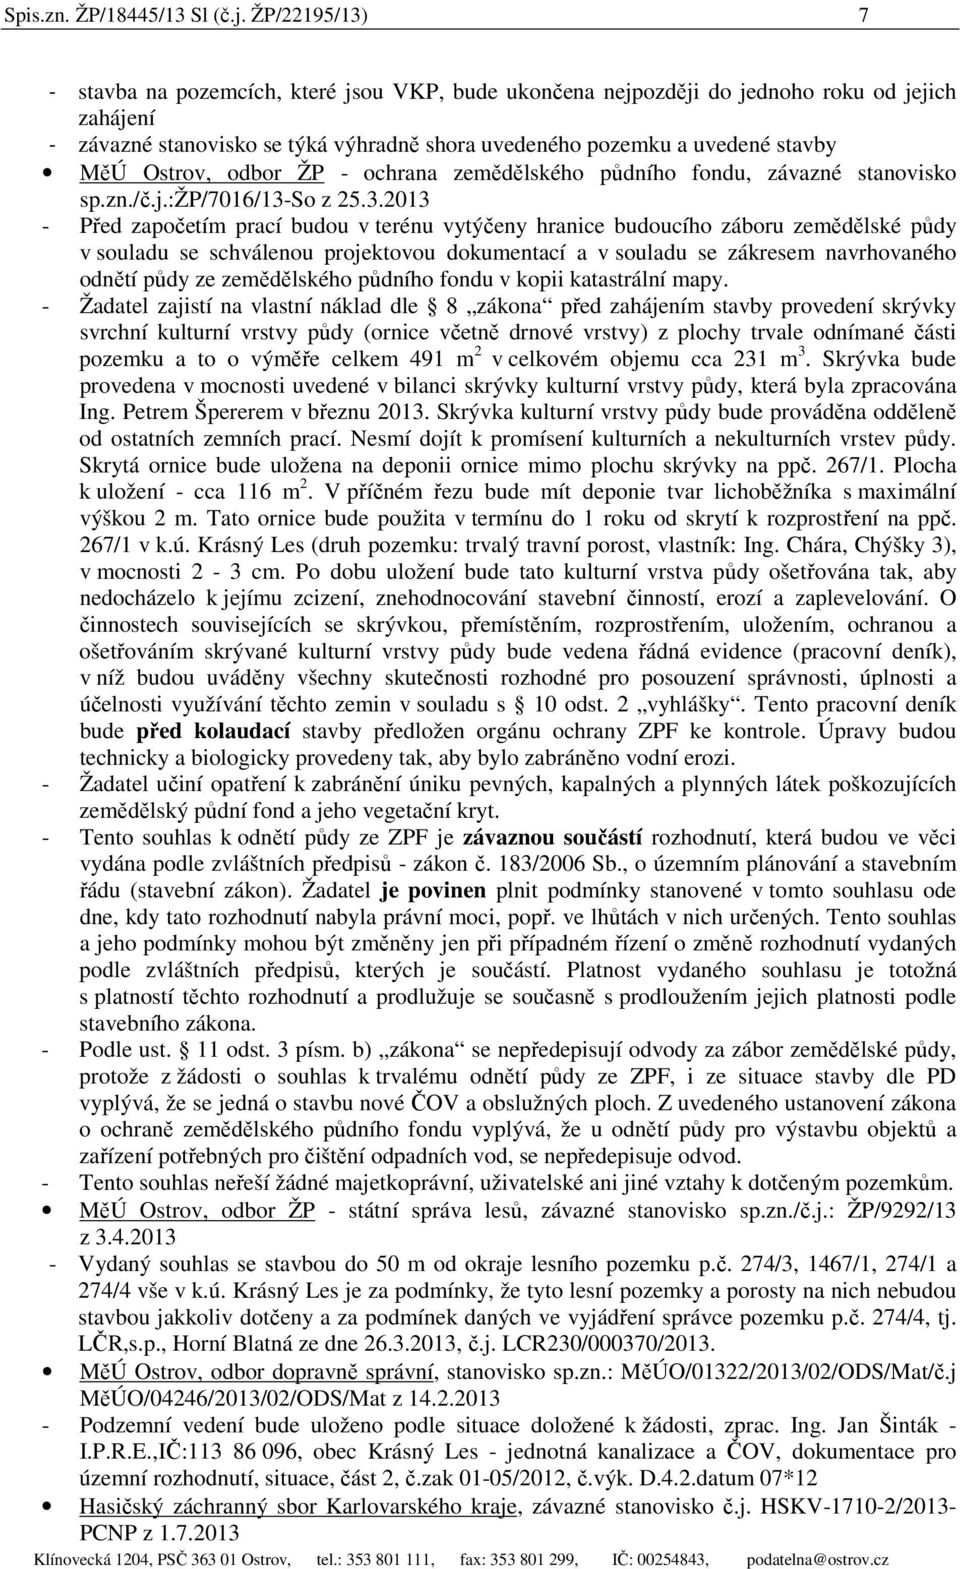 Ostrov, odbor ŽP - ochrana zemědělského půdního fondu, závazné stanovisko sp.zn./č.j.:žp/7016/13-